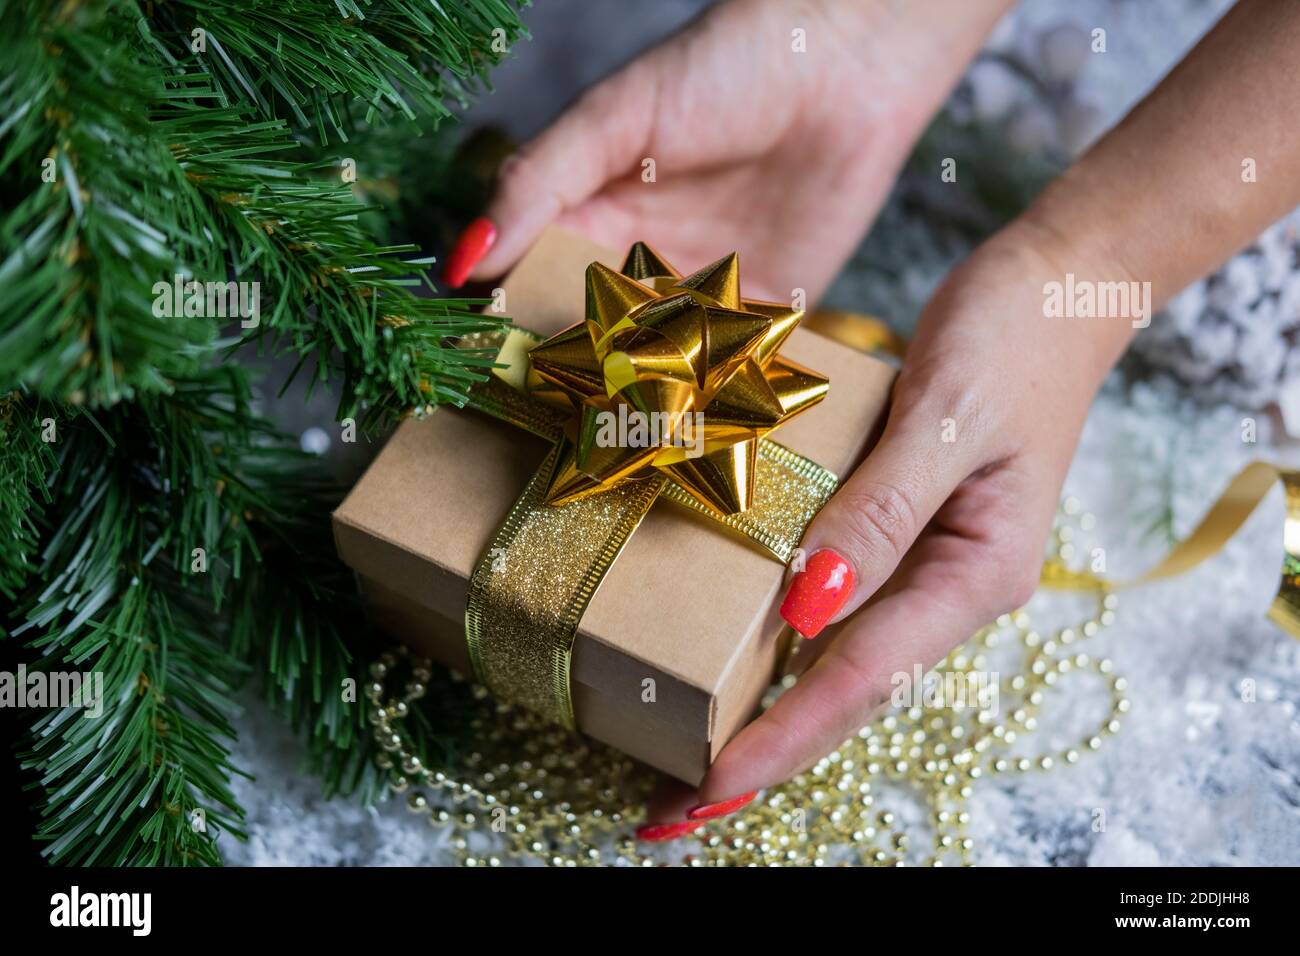 Sorpresa De Navidad Mujer Amorosa Dando Regalos Al Marido Foto de archivo -  Imagen de suéter, novia: 161285838